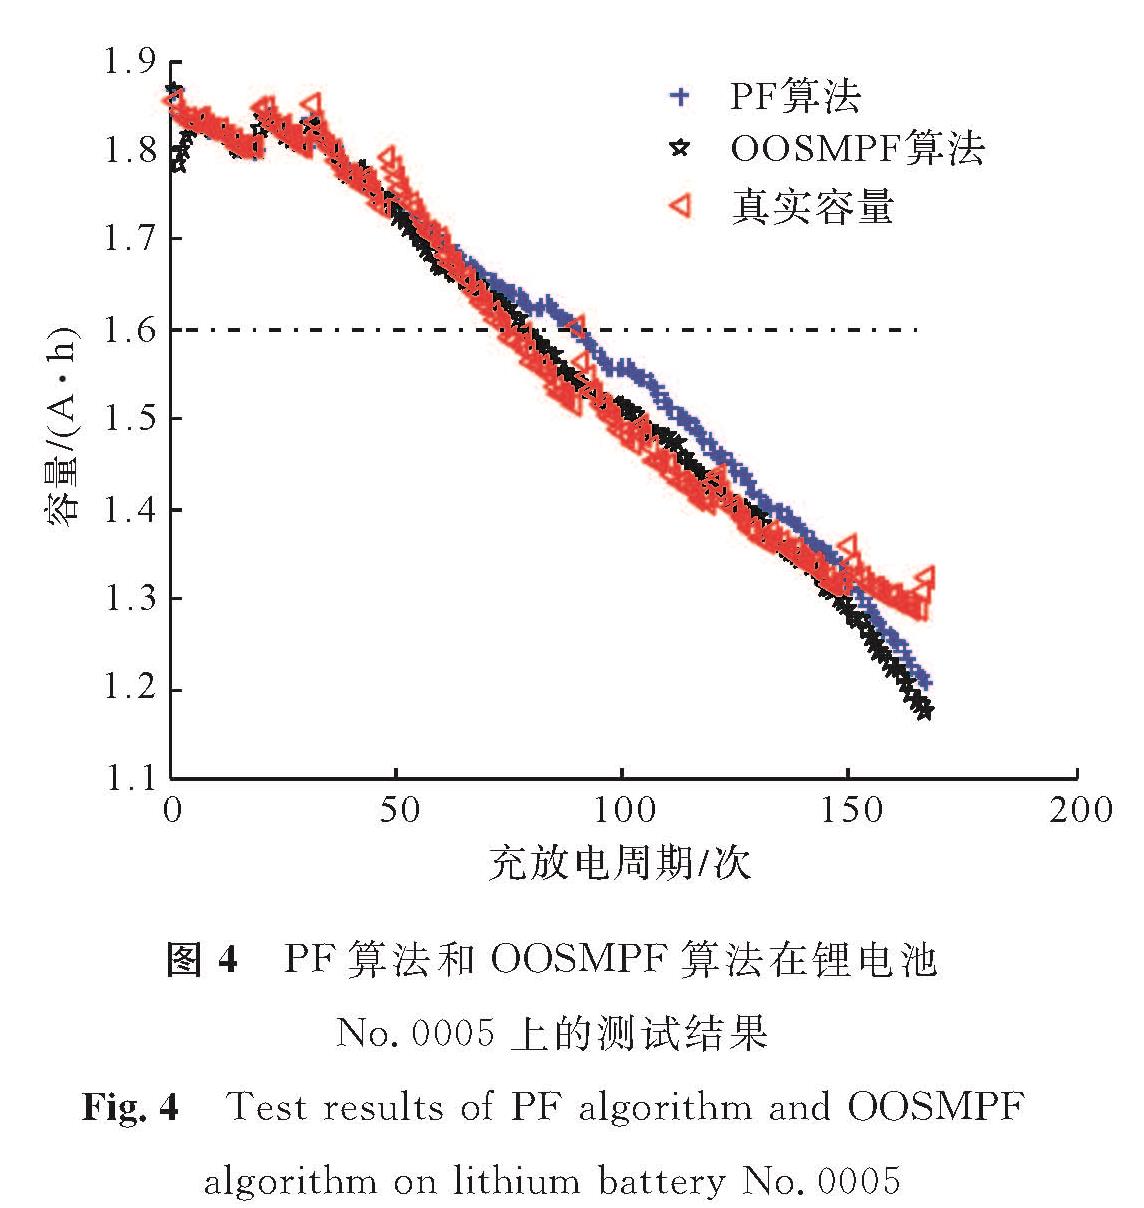 图4 PF算法和OOSMPF算法在锂电池No.0005上的测试结果<br/>Fig.4 Test results of PF algorithm and OOSMPF algorithm on lithium battery No.0005